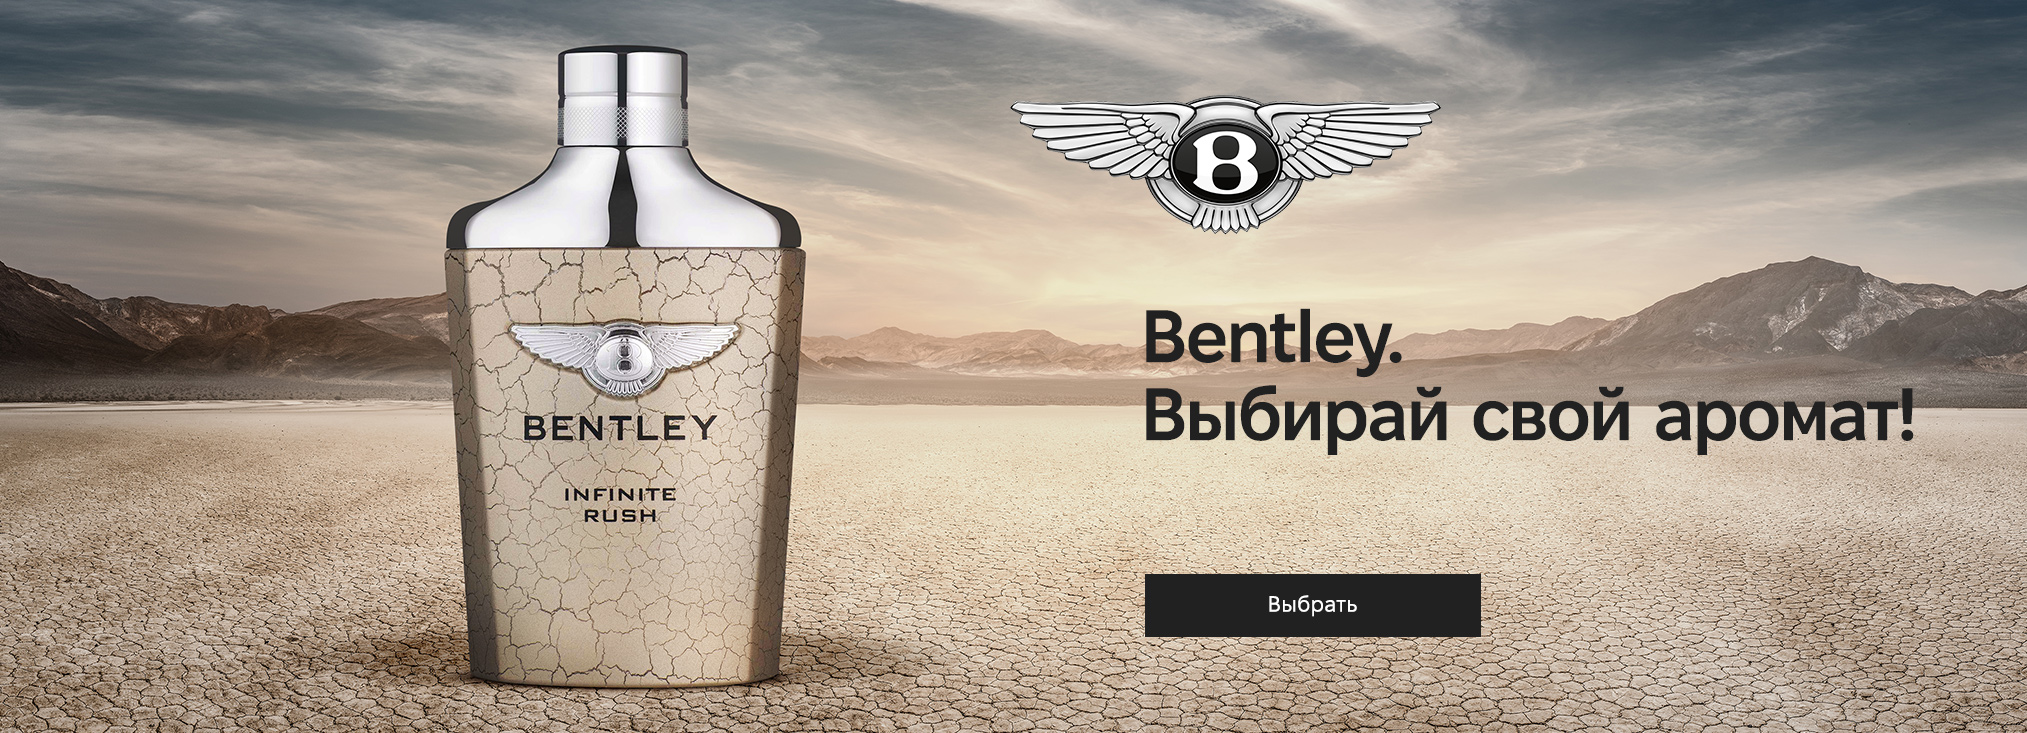 Bentley_20280